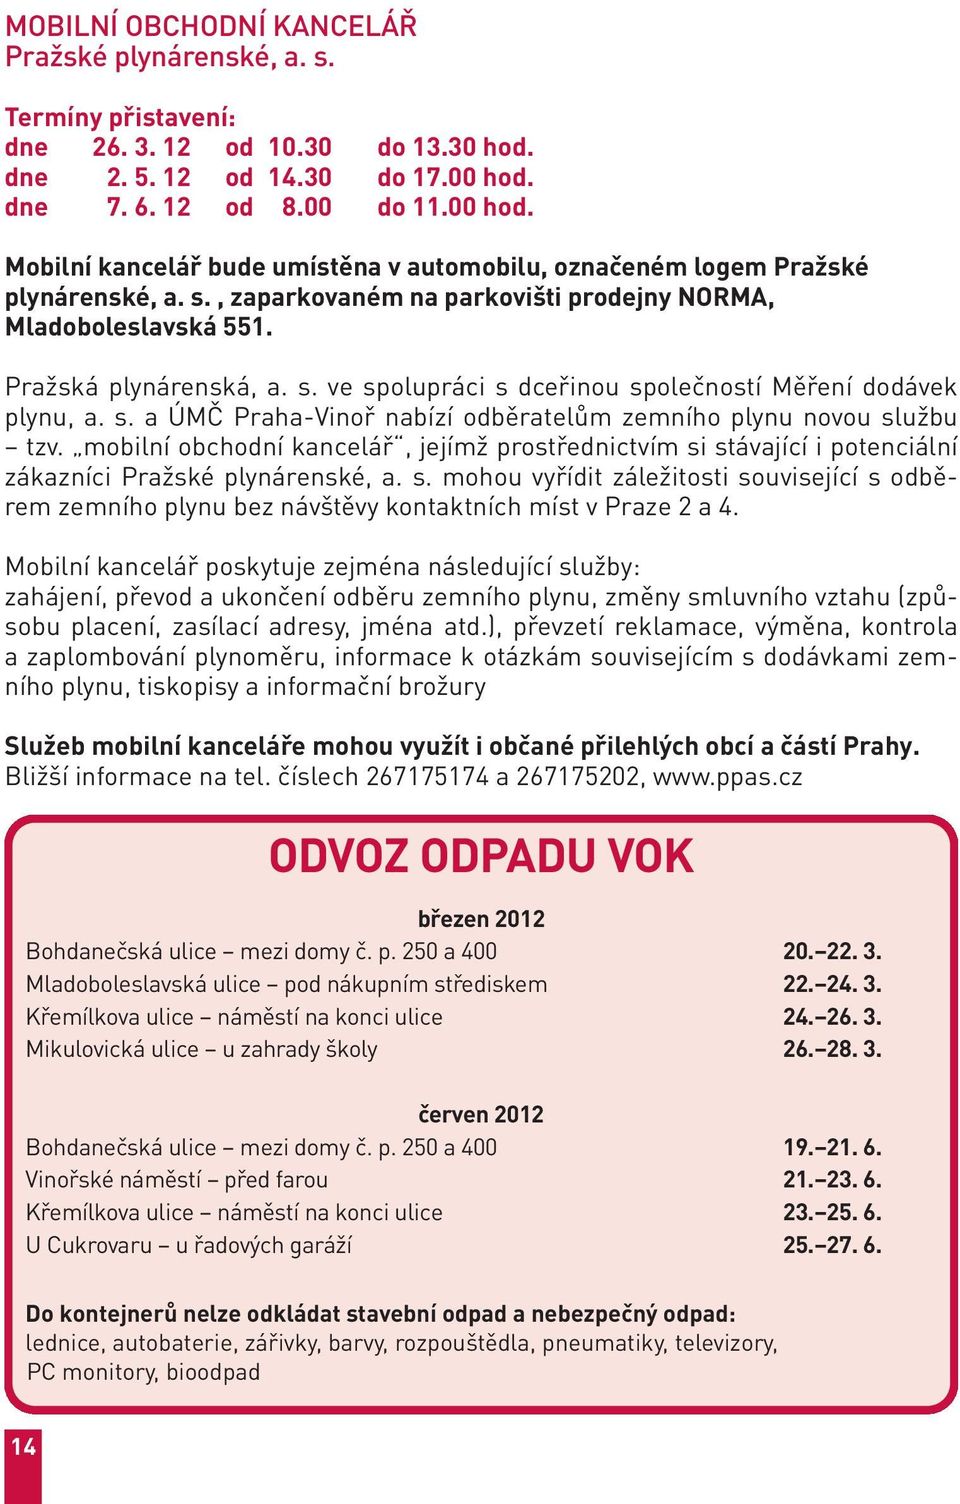 Pražská plynárenská, a. s. ve spolupráci s dceřinou společností Měření dodávek plynu, a. s. a ÚMČ Praha-Vinoř nabízí odběratelům zemního plynu novou službu tzv.